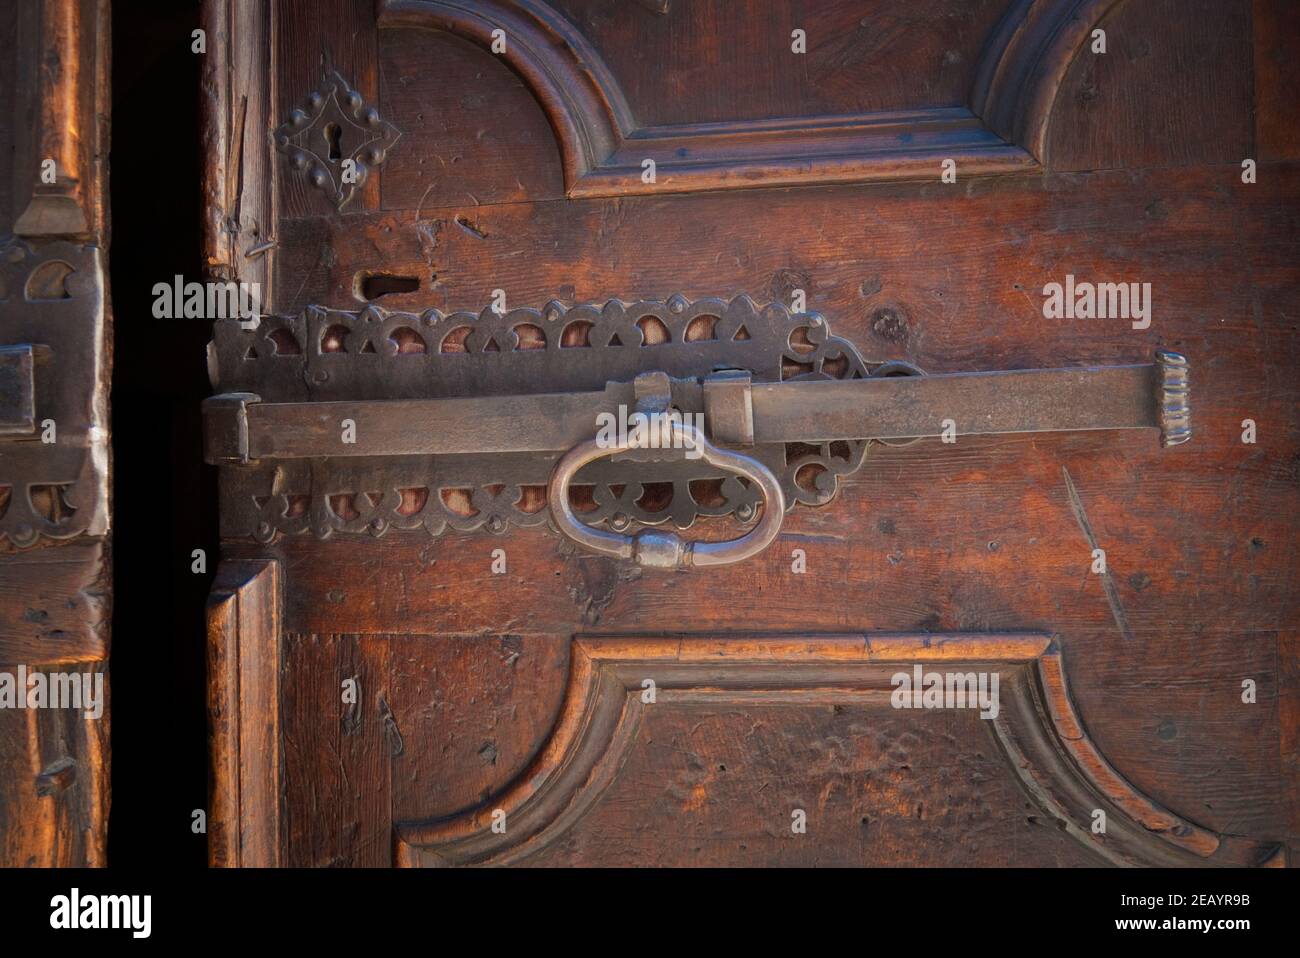 Antica porta in legno con elaborata chiocciola in ferro nella città medievale di Bormio, nelle Alpi, Italia Foto Stock